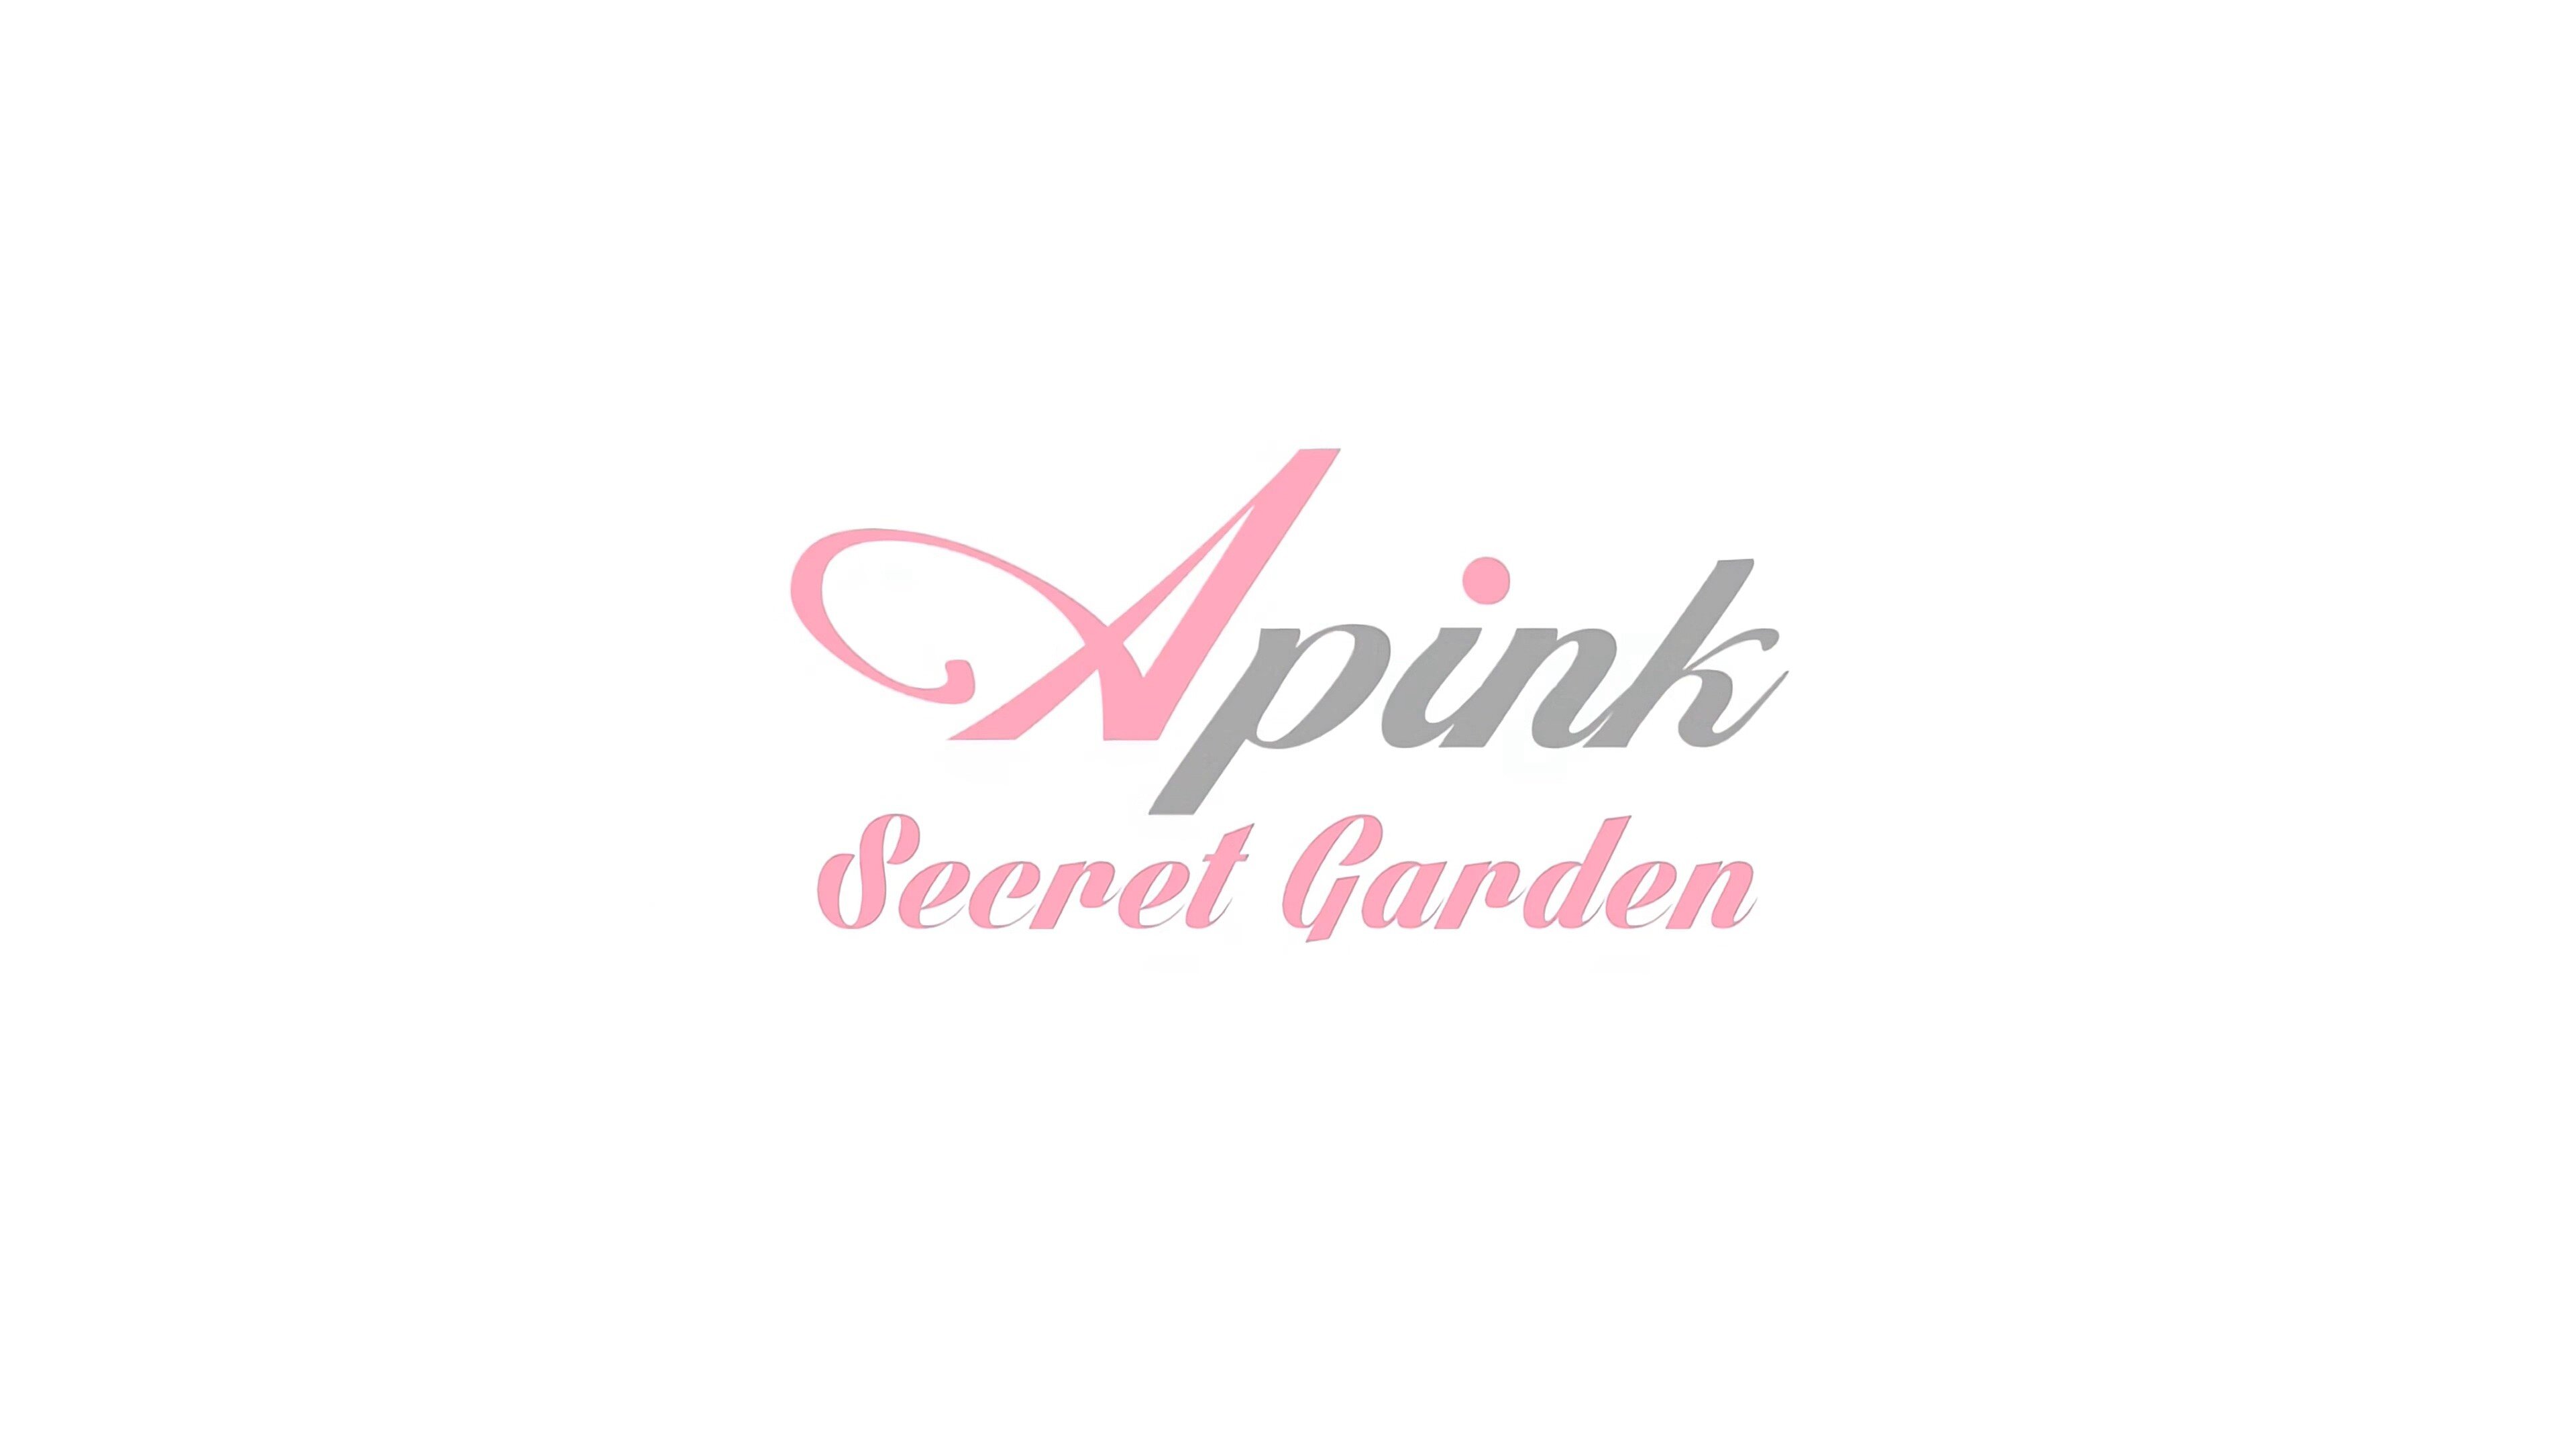 [MV] Apink - Secret Garden 2160p 60fps.mp4_20160606_101759.467.jpg